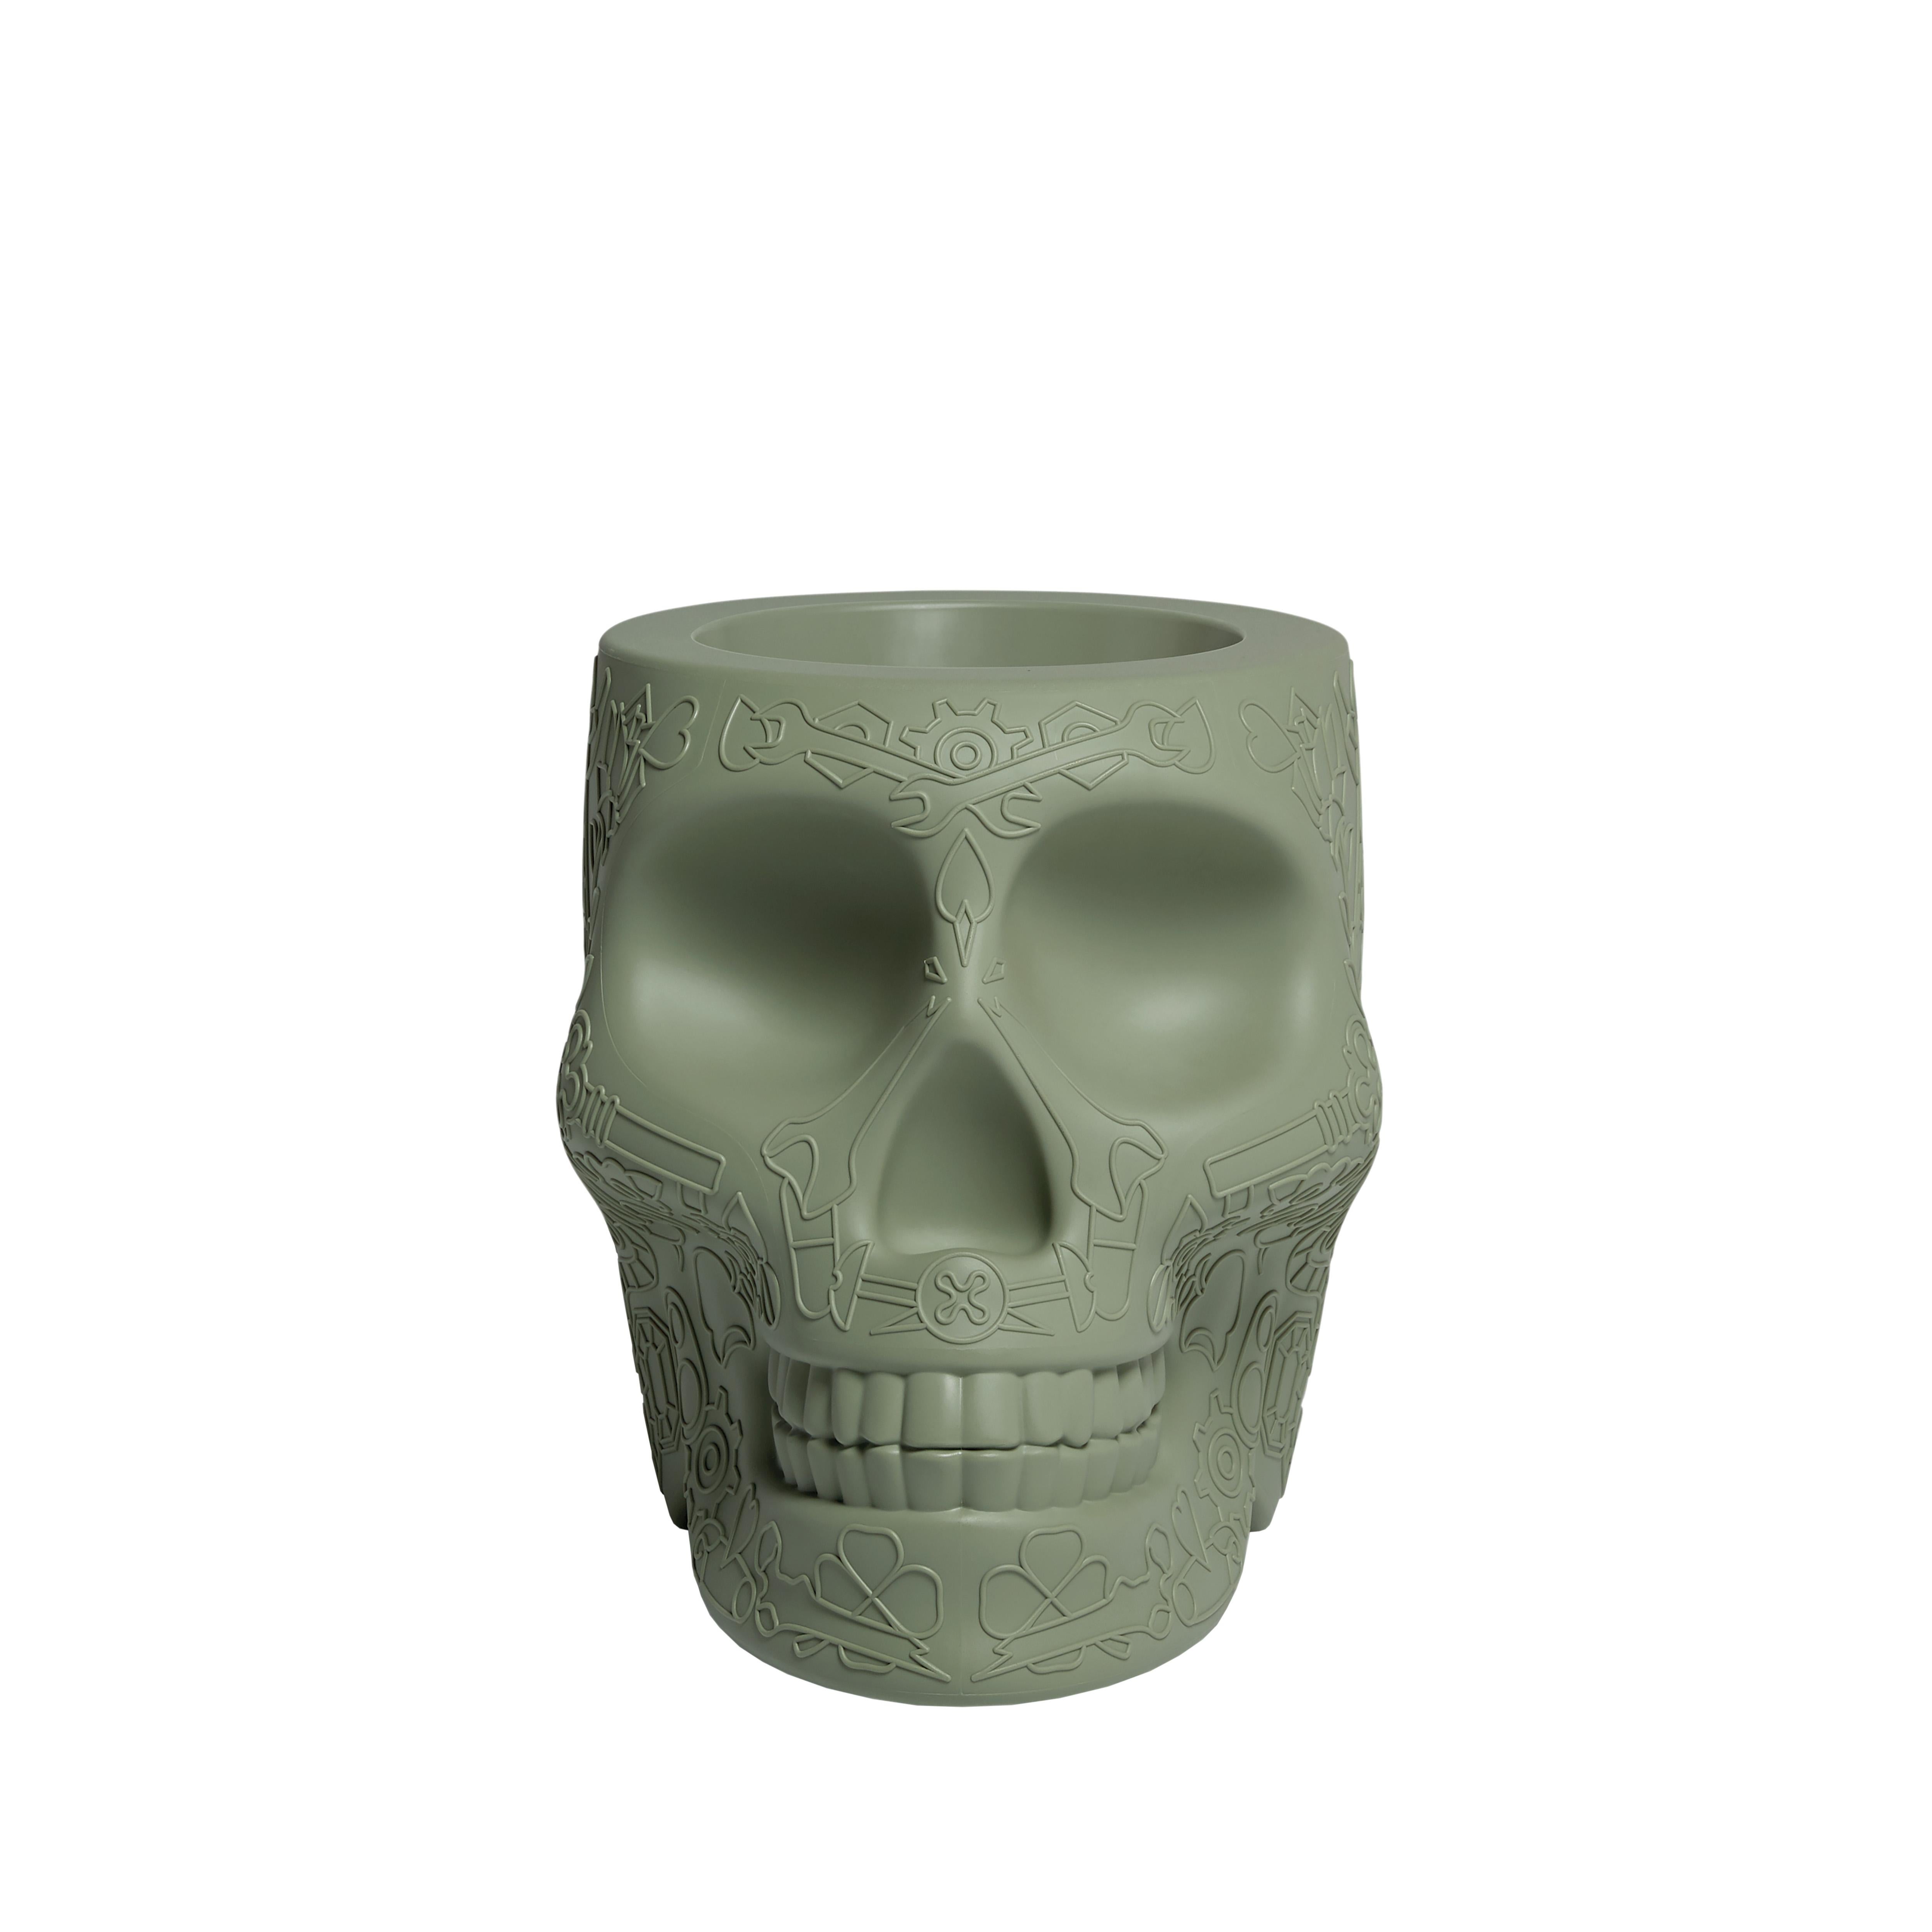 For Sale: Green (Balsam Green) Modern Skull Terracotta Plastic Planter or Champagne Cooler by Studio Job